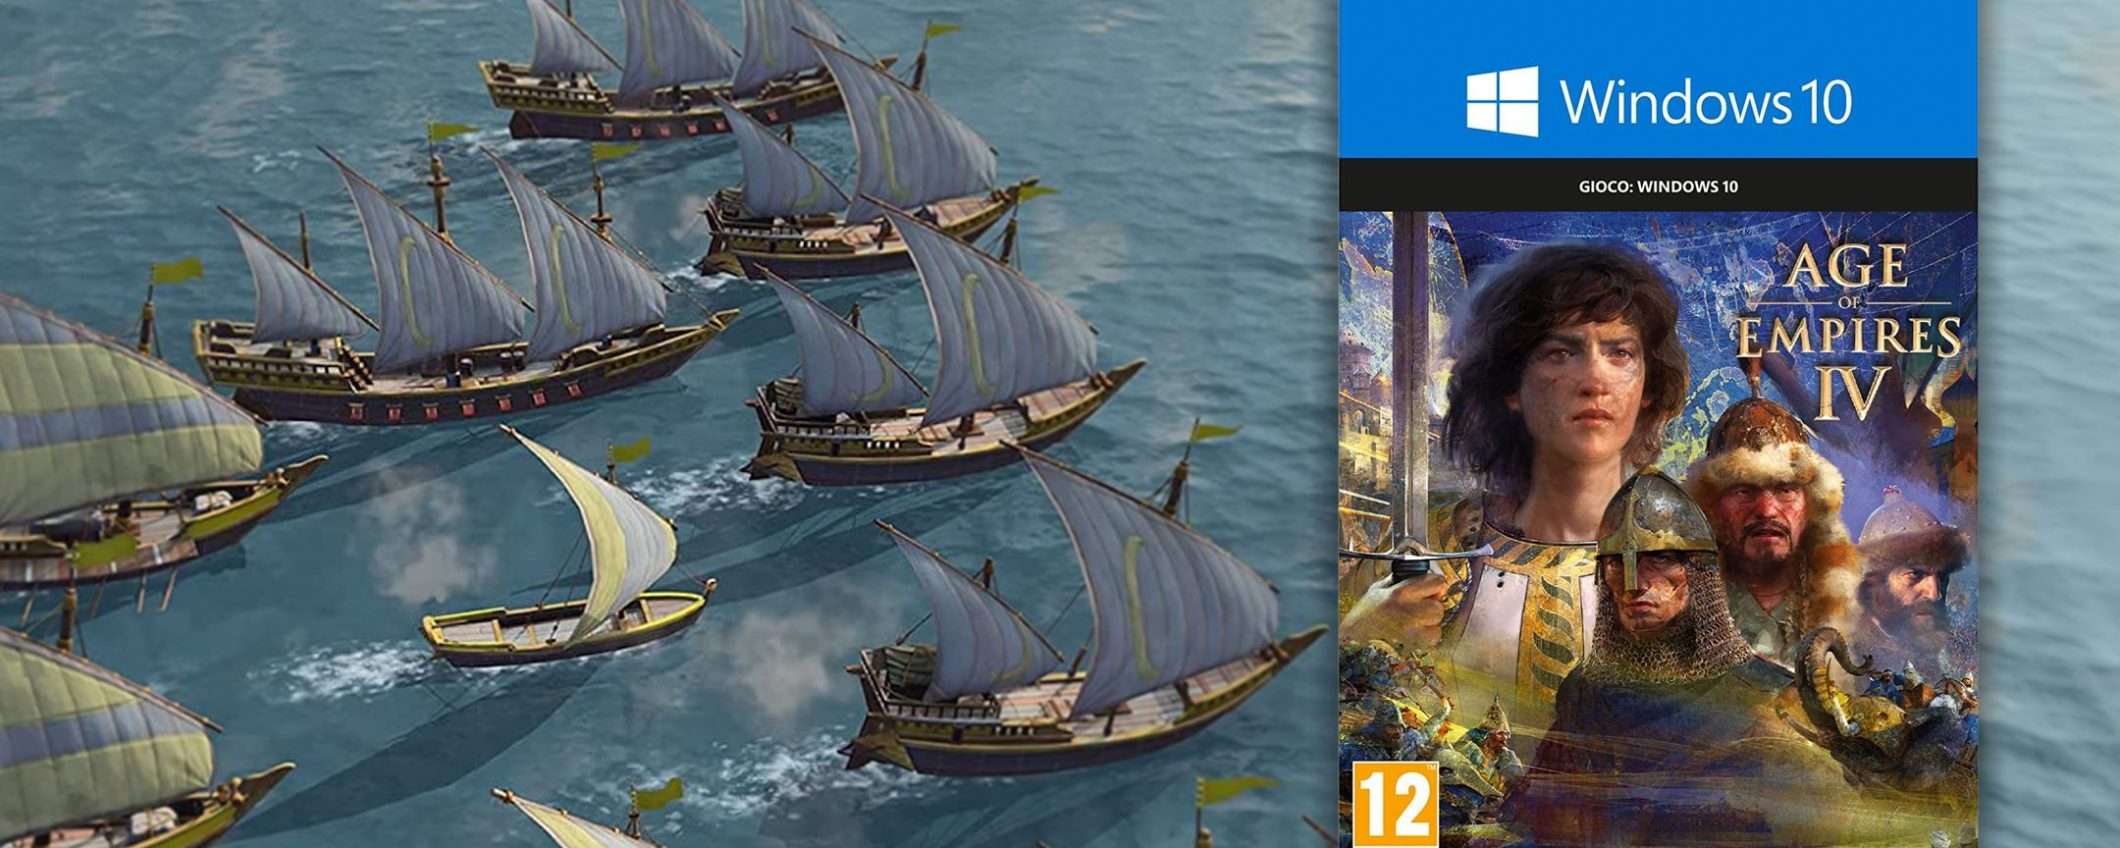 Age of Empires IV, la più epica delle battaglie è tornata